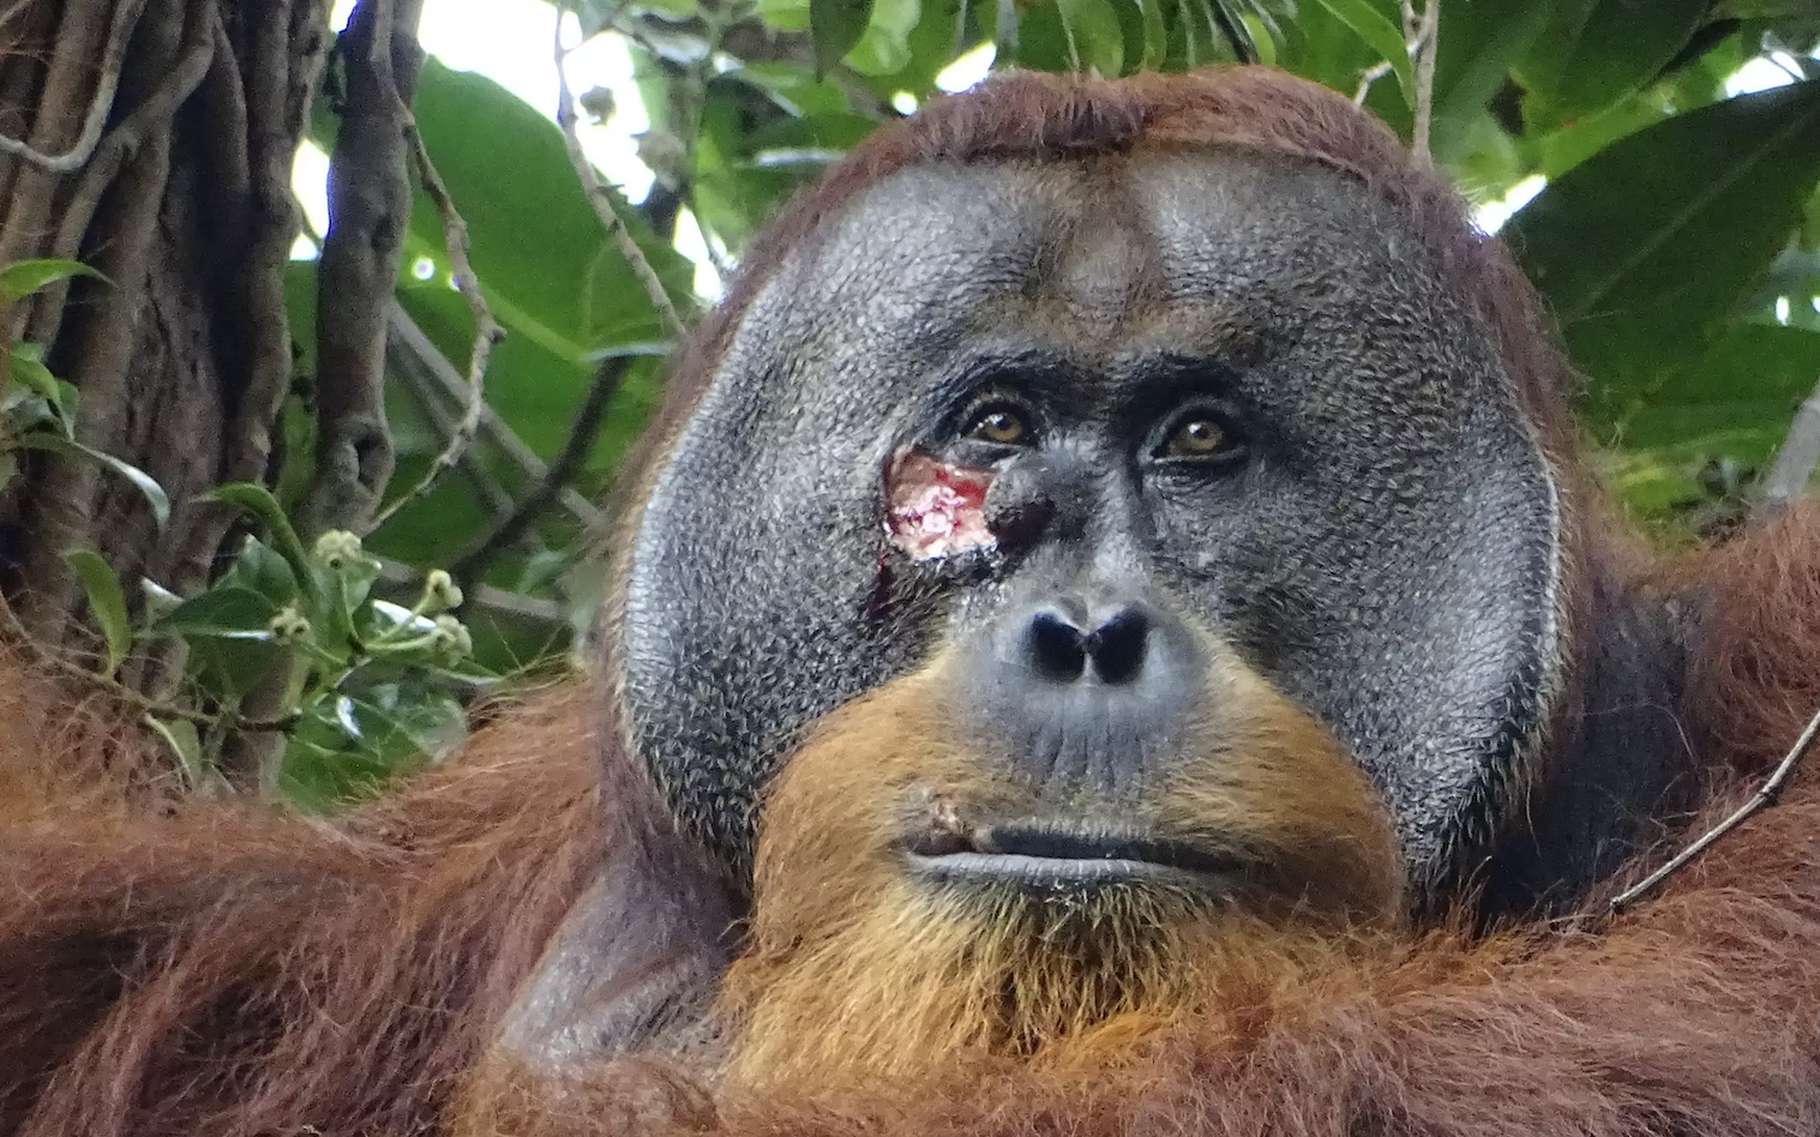 Première : un orang-outan sauvage soigne sa blessure avec une plante